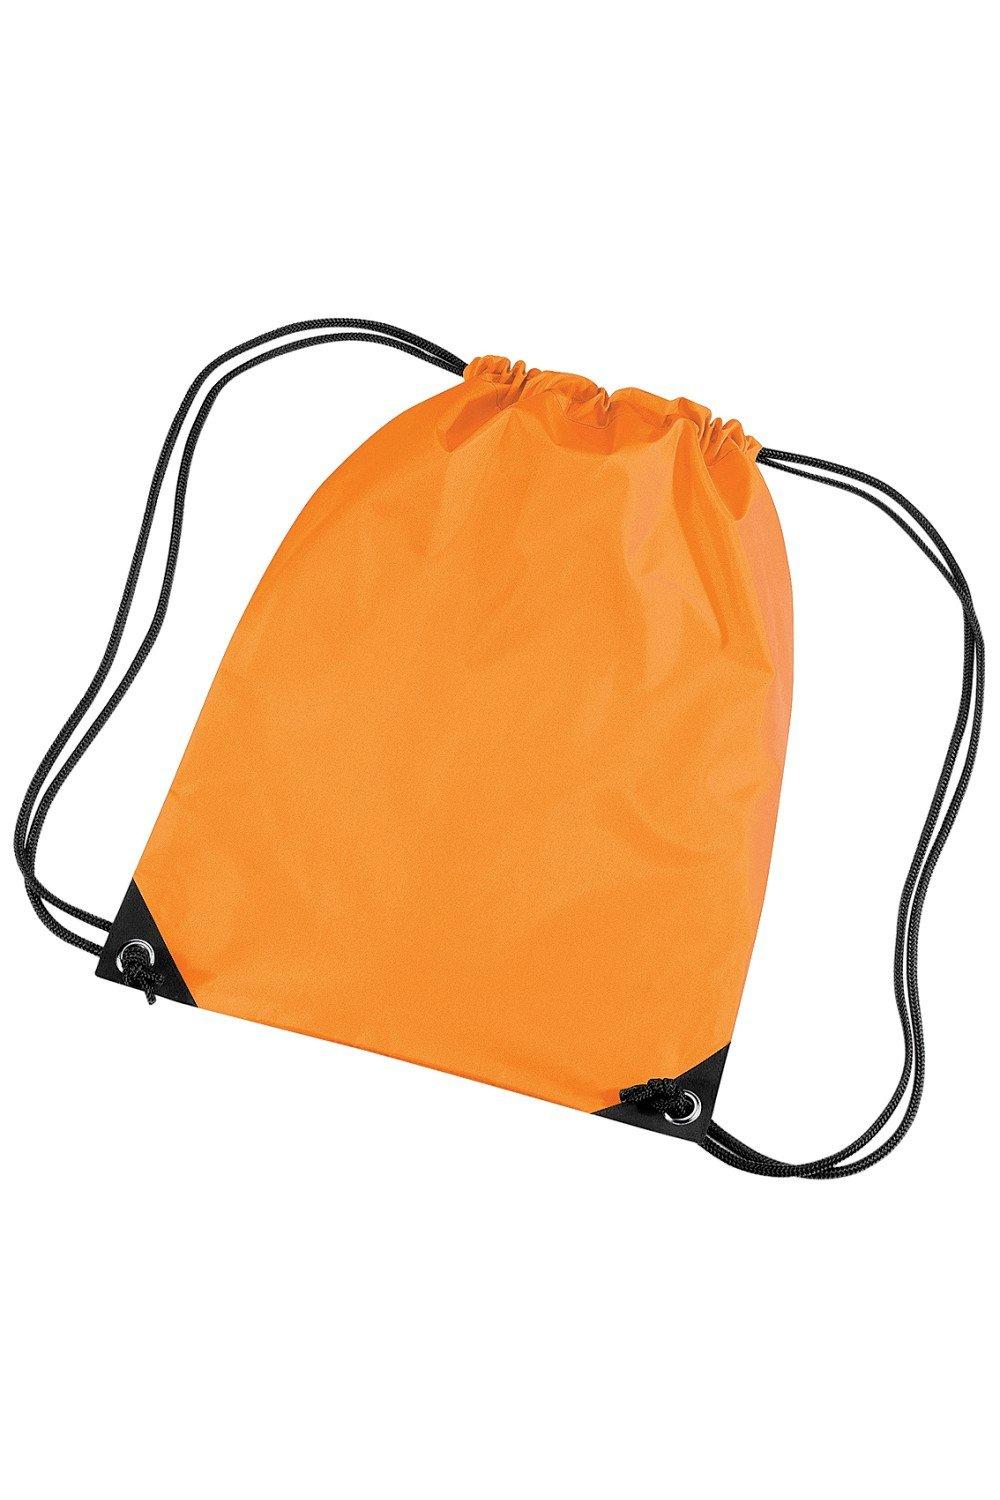 Водонепроницаемая сумка Gymsac премиум-класса (11 литров) Bagbase, оранжевый